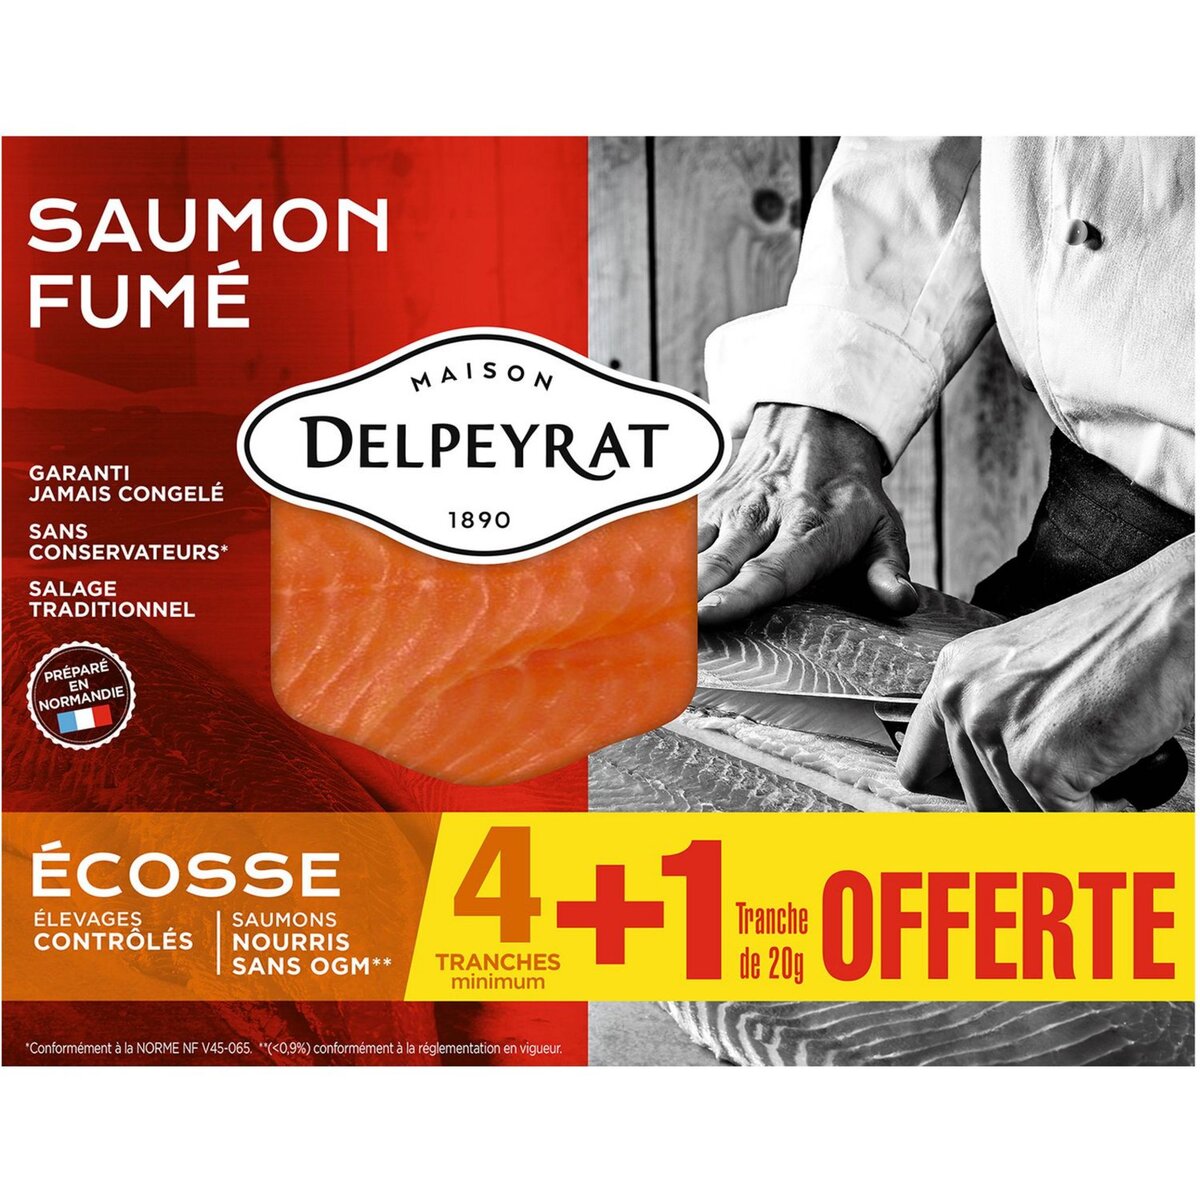 DELPEYRAT Saumon fumé d'Ecosse 4 tranches +1 offerte 150g